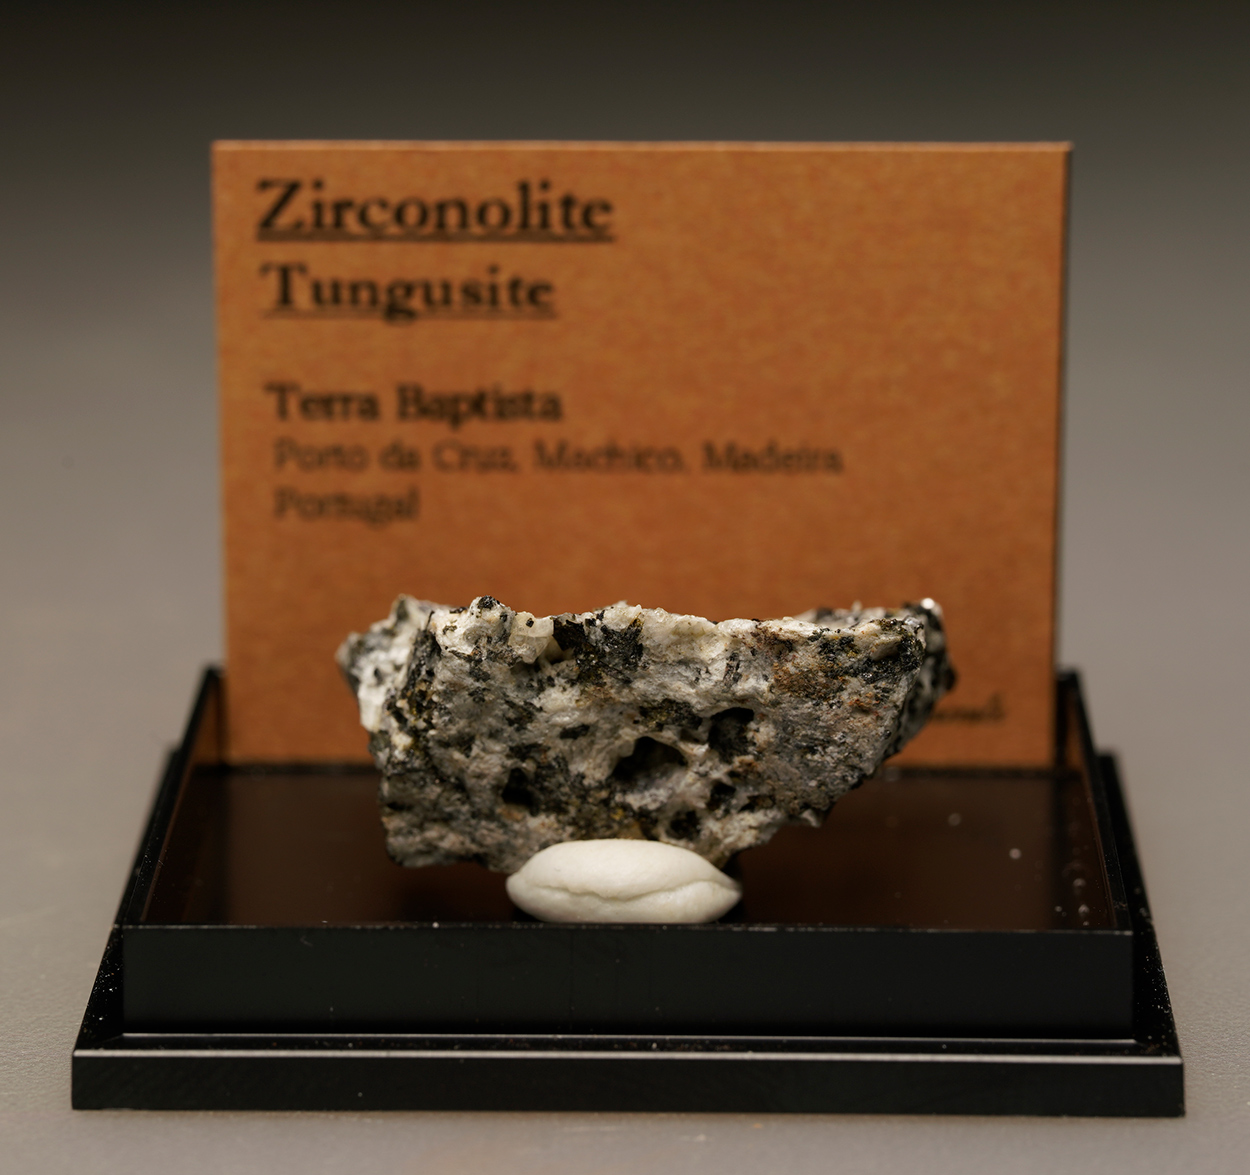 Zirconolite & Tungusite